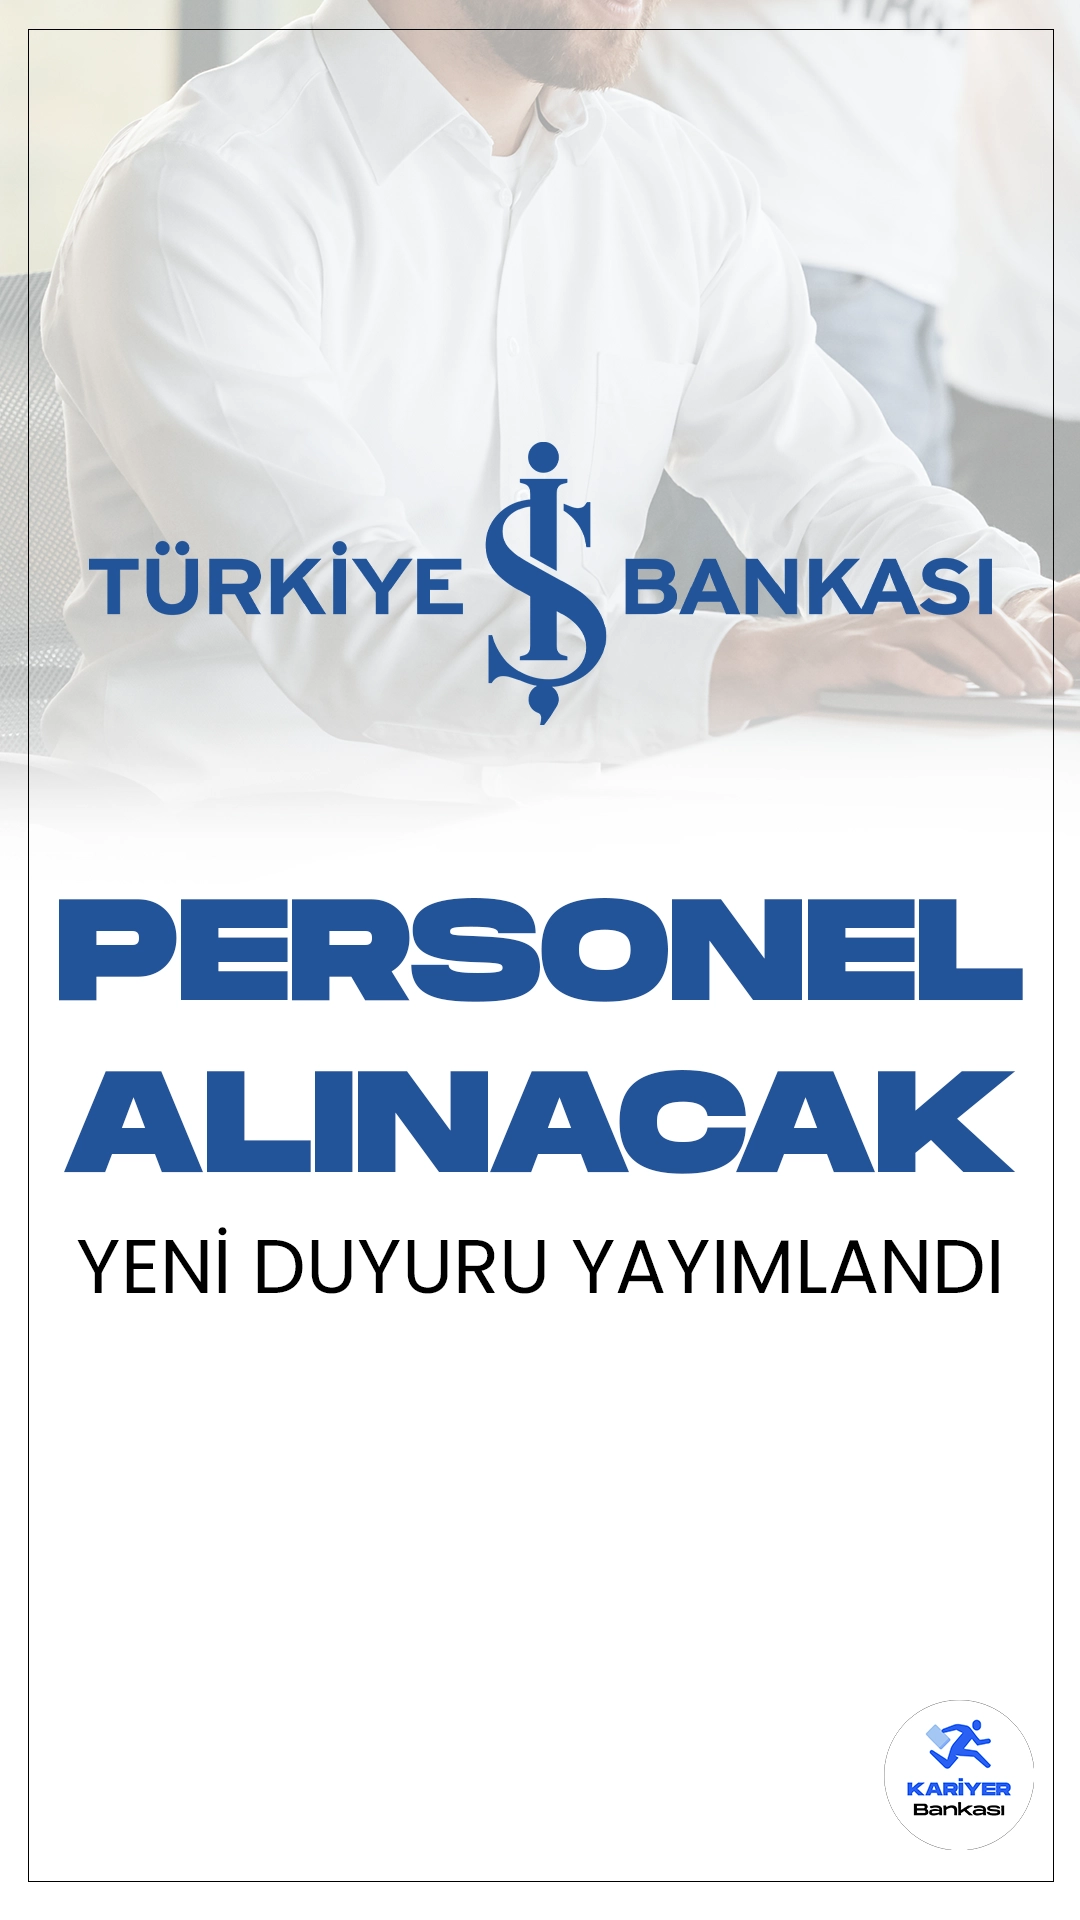 İş Bankası Yeni Personel Alımı Duyurusu Yayımlandı. İş Bankası Kariyer sayfasından yayımlanan duyuruda," İstanbul Kurumsal Şubelerimizde, Kurumsal Müşteri İlişkileri Yöneticisi olarak çalışacak Uzman Yardımcısı ekip arkadaşları arıyoruz." ifadeleri yer aldı. Başvuru yapacak adayların başvuru şartlarını dikkatle incelemesi gerekmektedir.